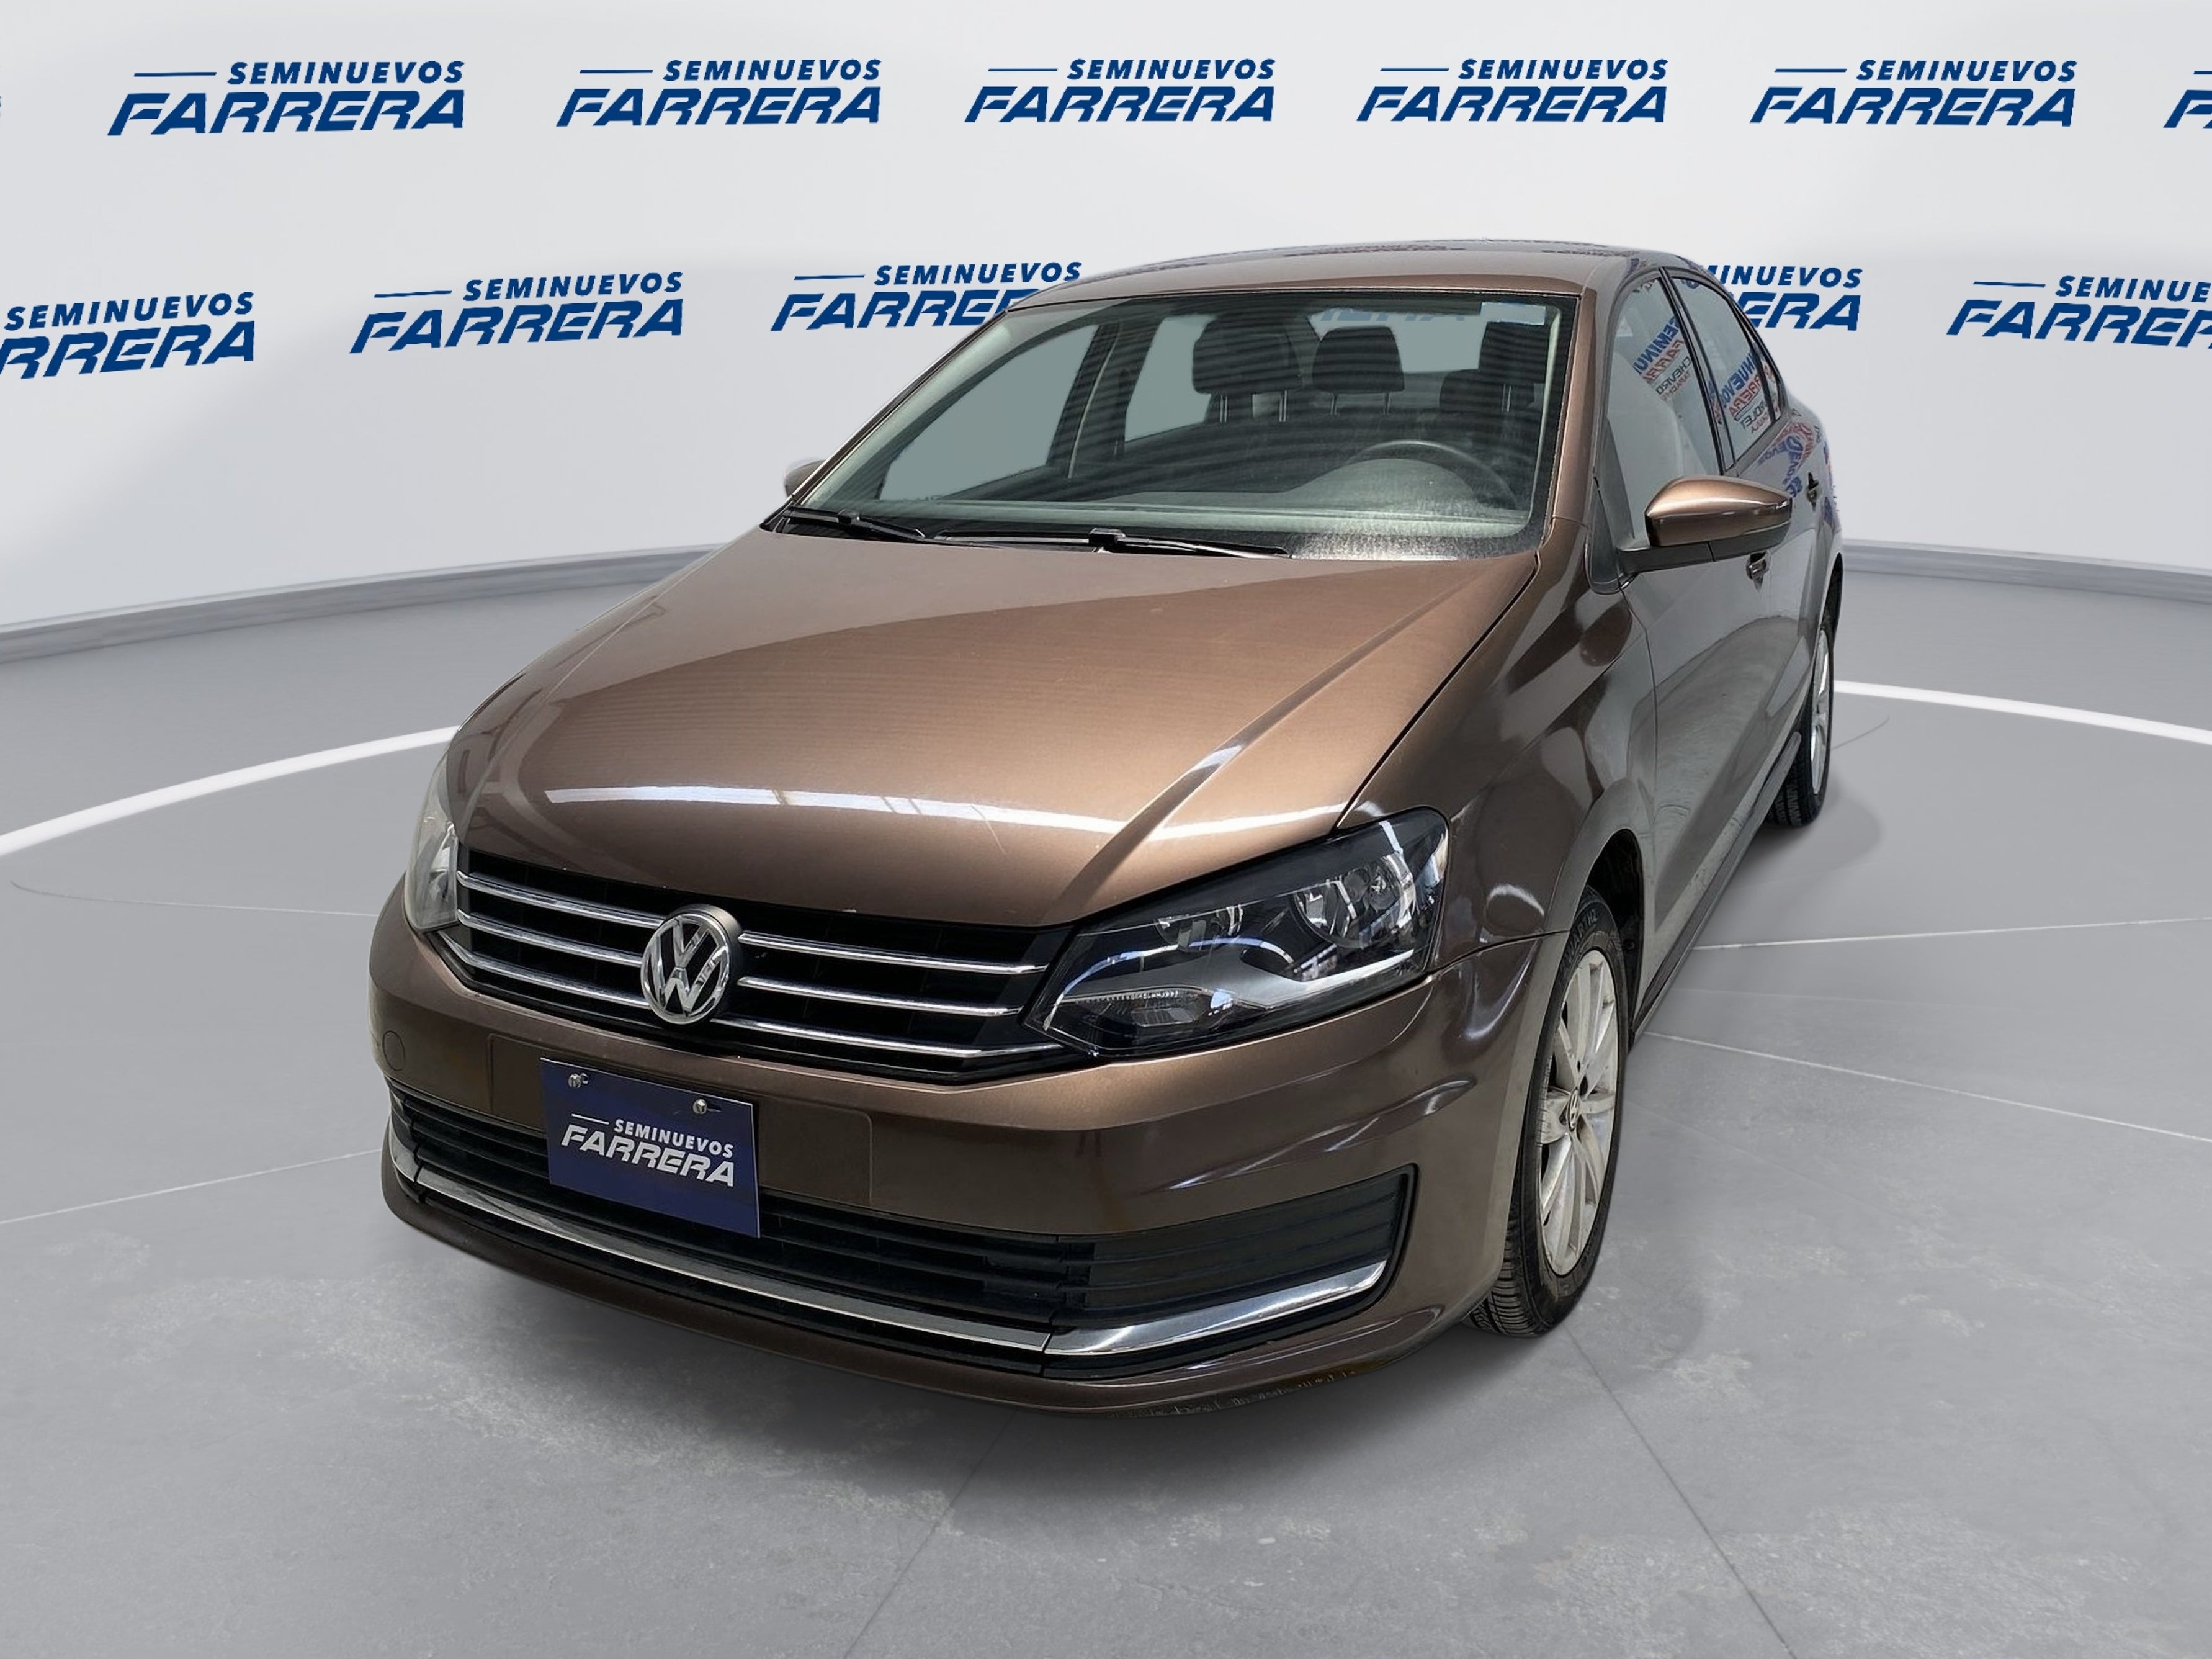 2018 Volkswagen Vento 1.5 Comfortline At